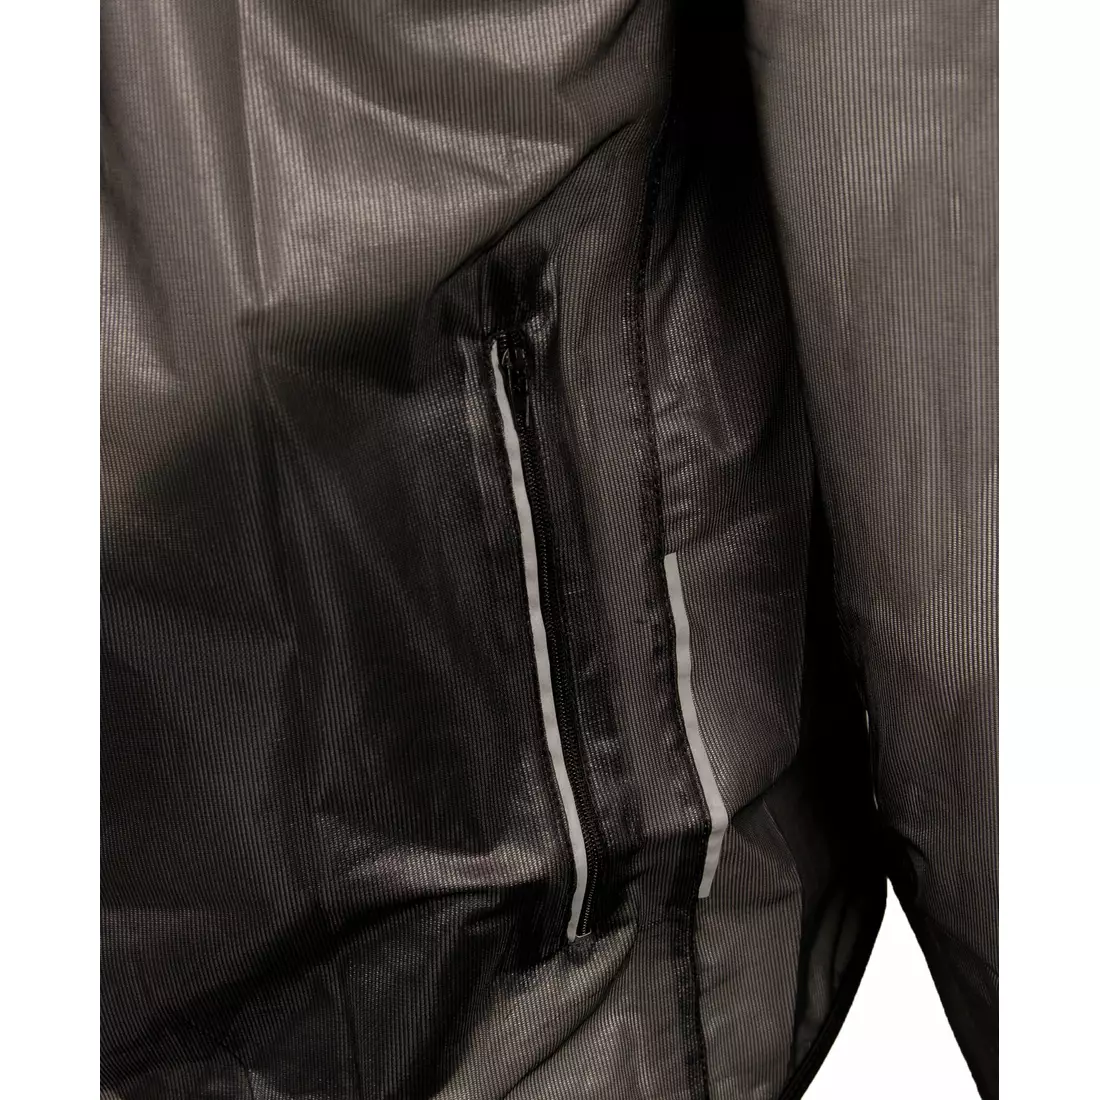 Jachetă de ciclism CROSSROAD RACE ultrauşoară, rezistentă la ploaie, transparent-negru